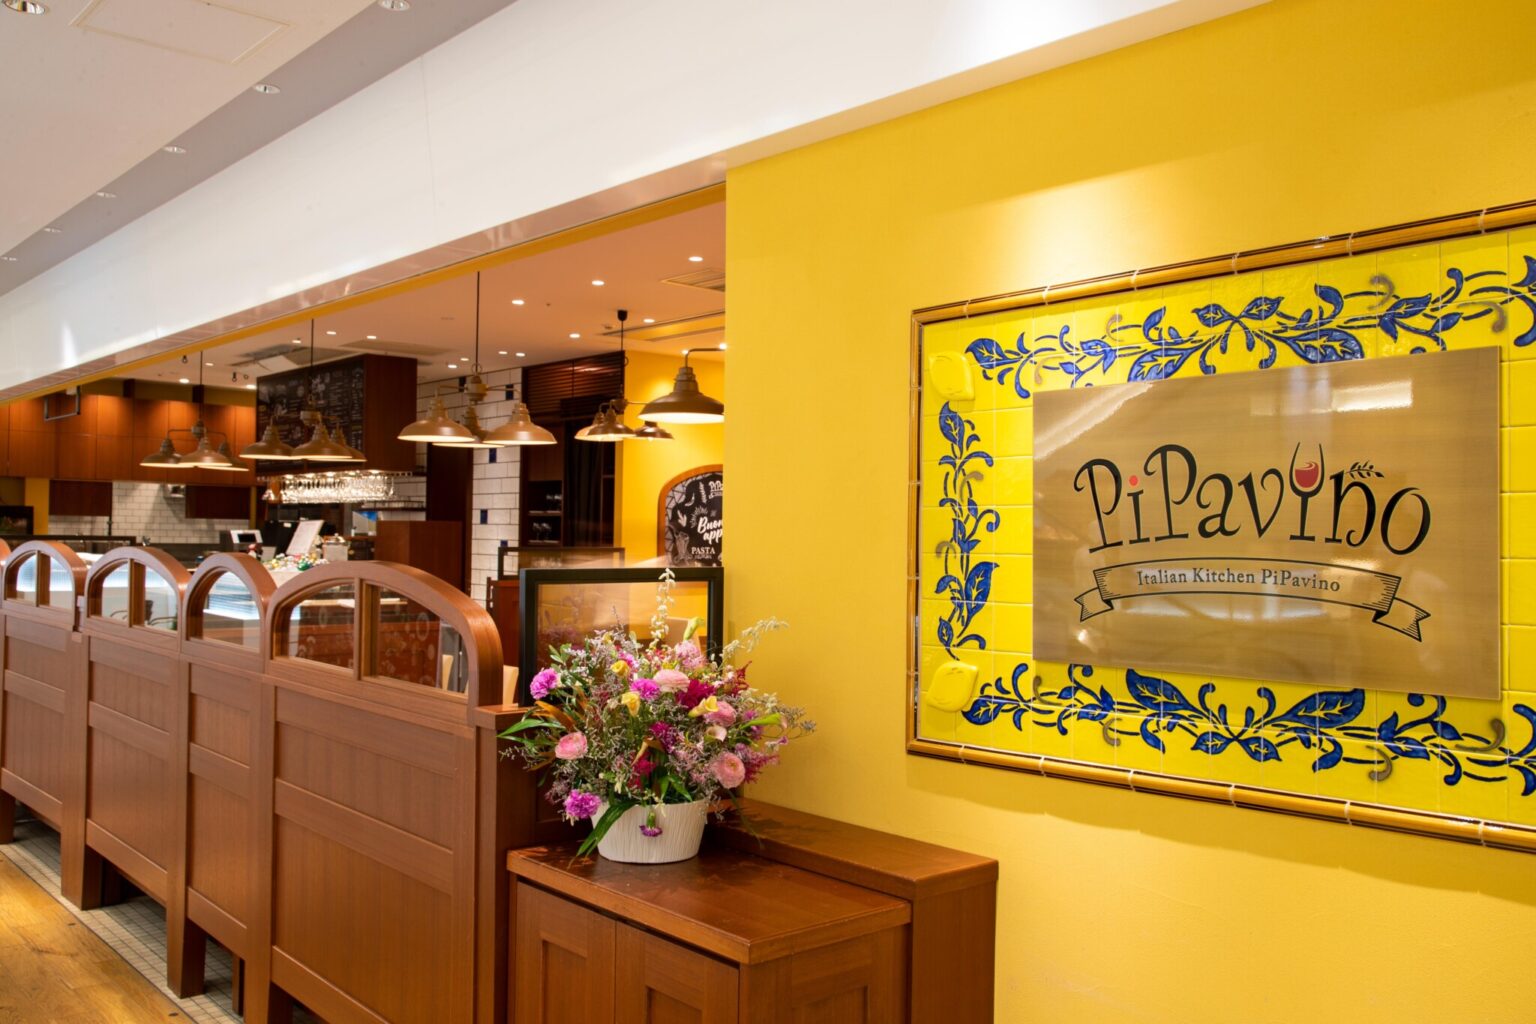 店名の「PiPavino」には、「Piacevole（楽しい）」という意味も込められている。